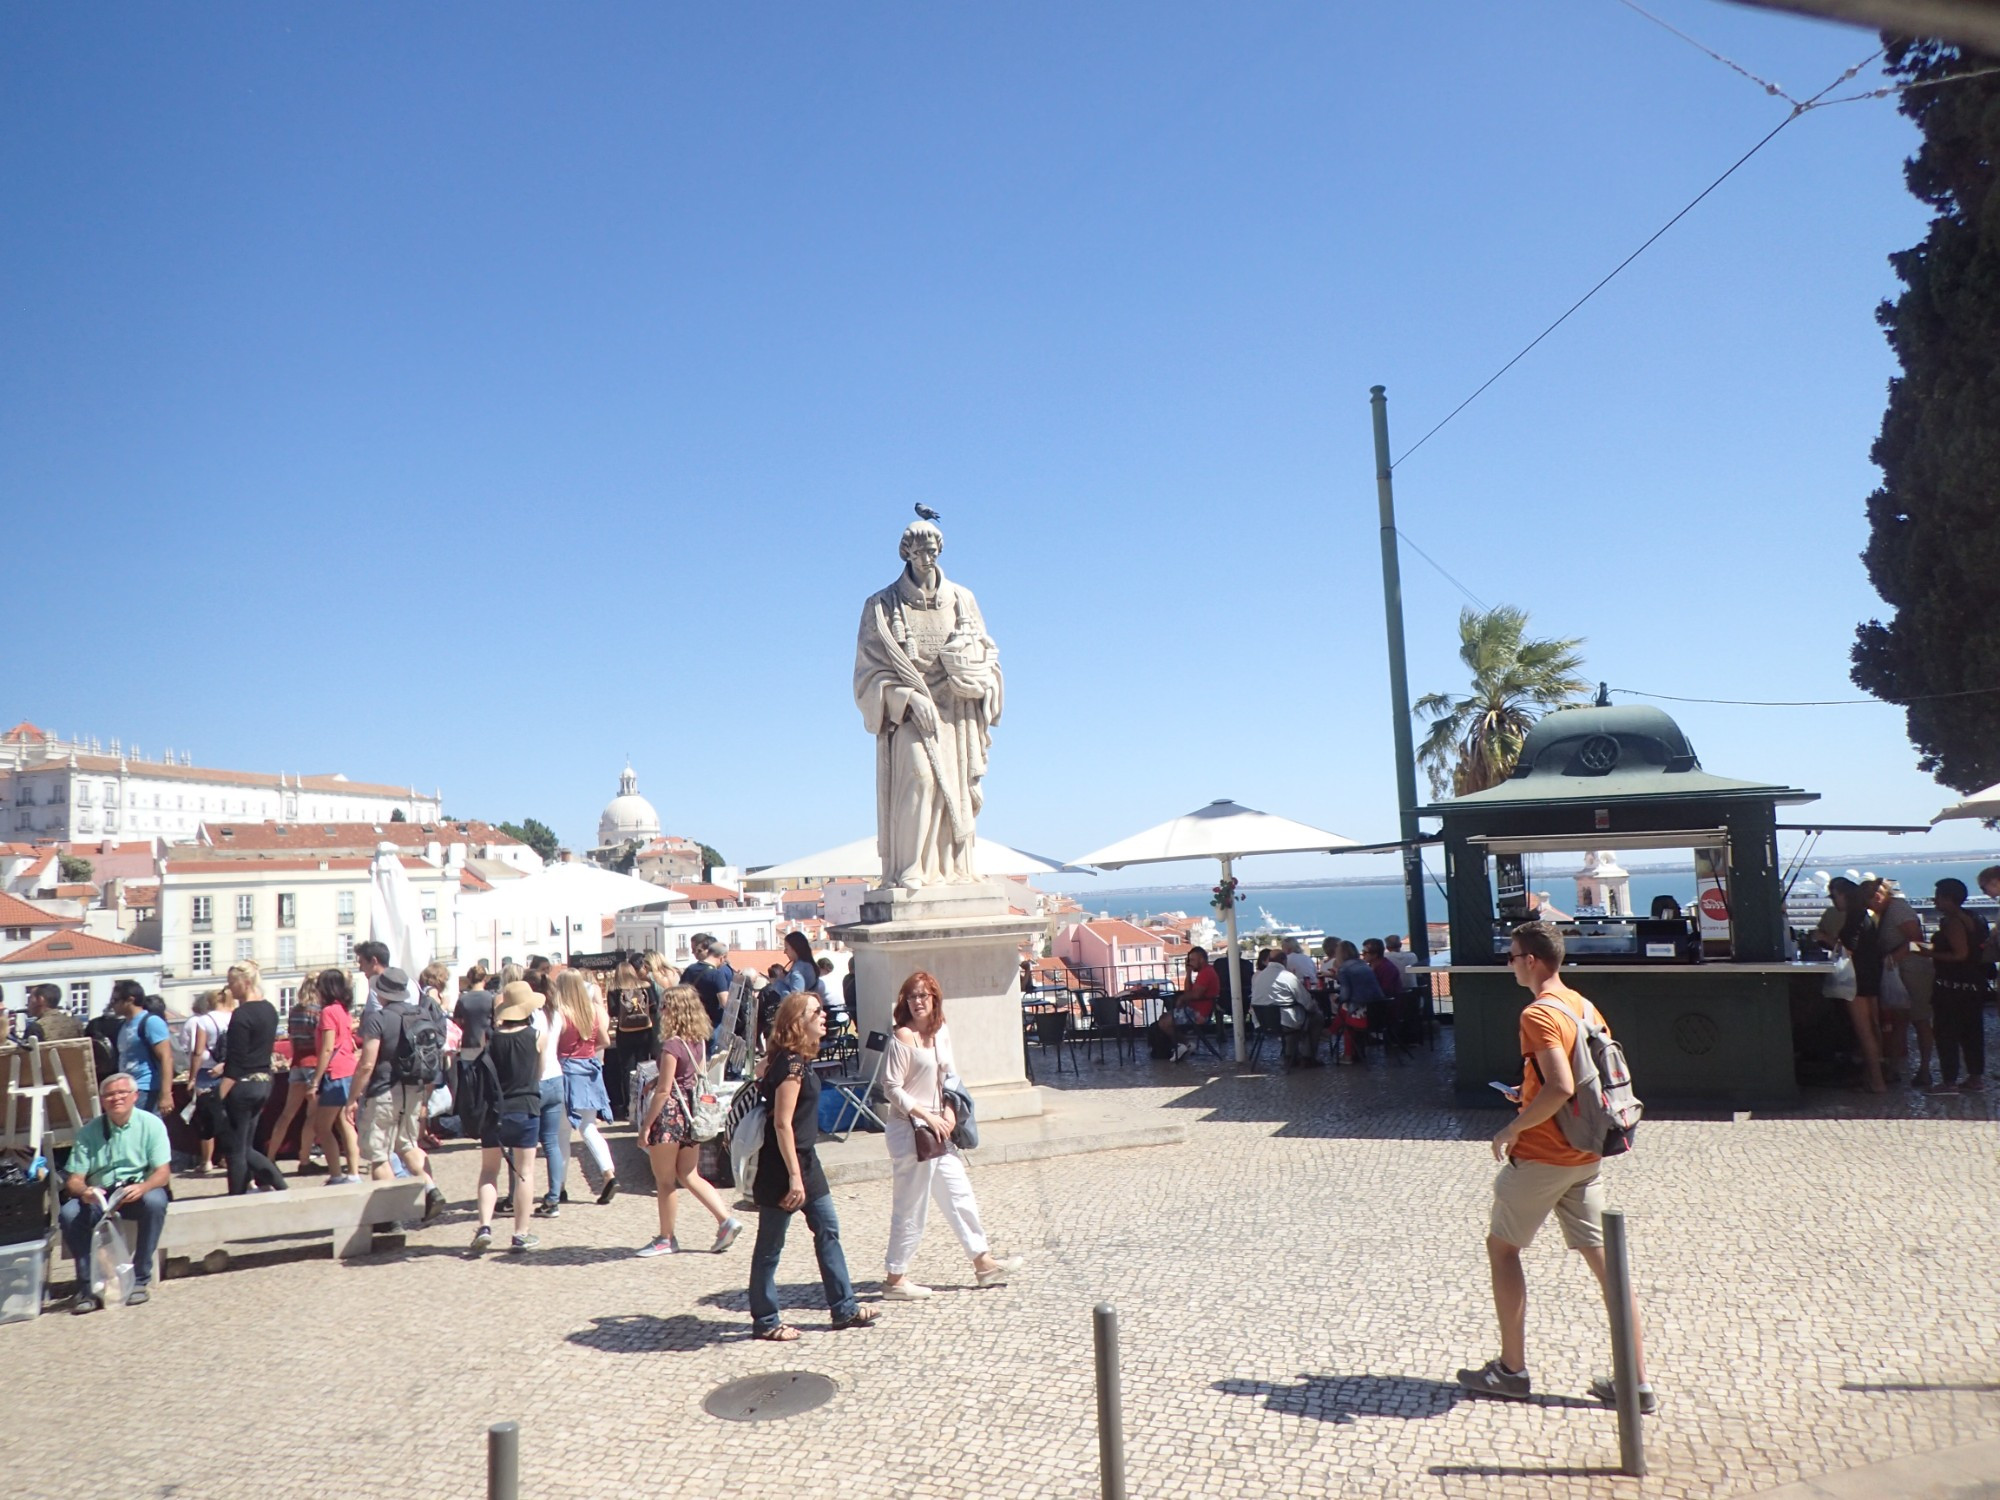 Sao Vincente Statue, Portugal